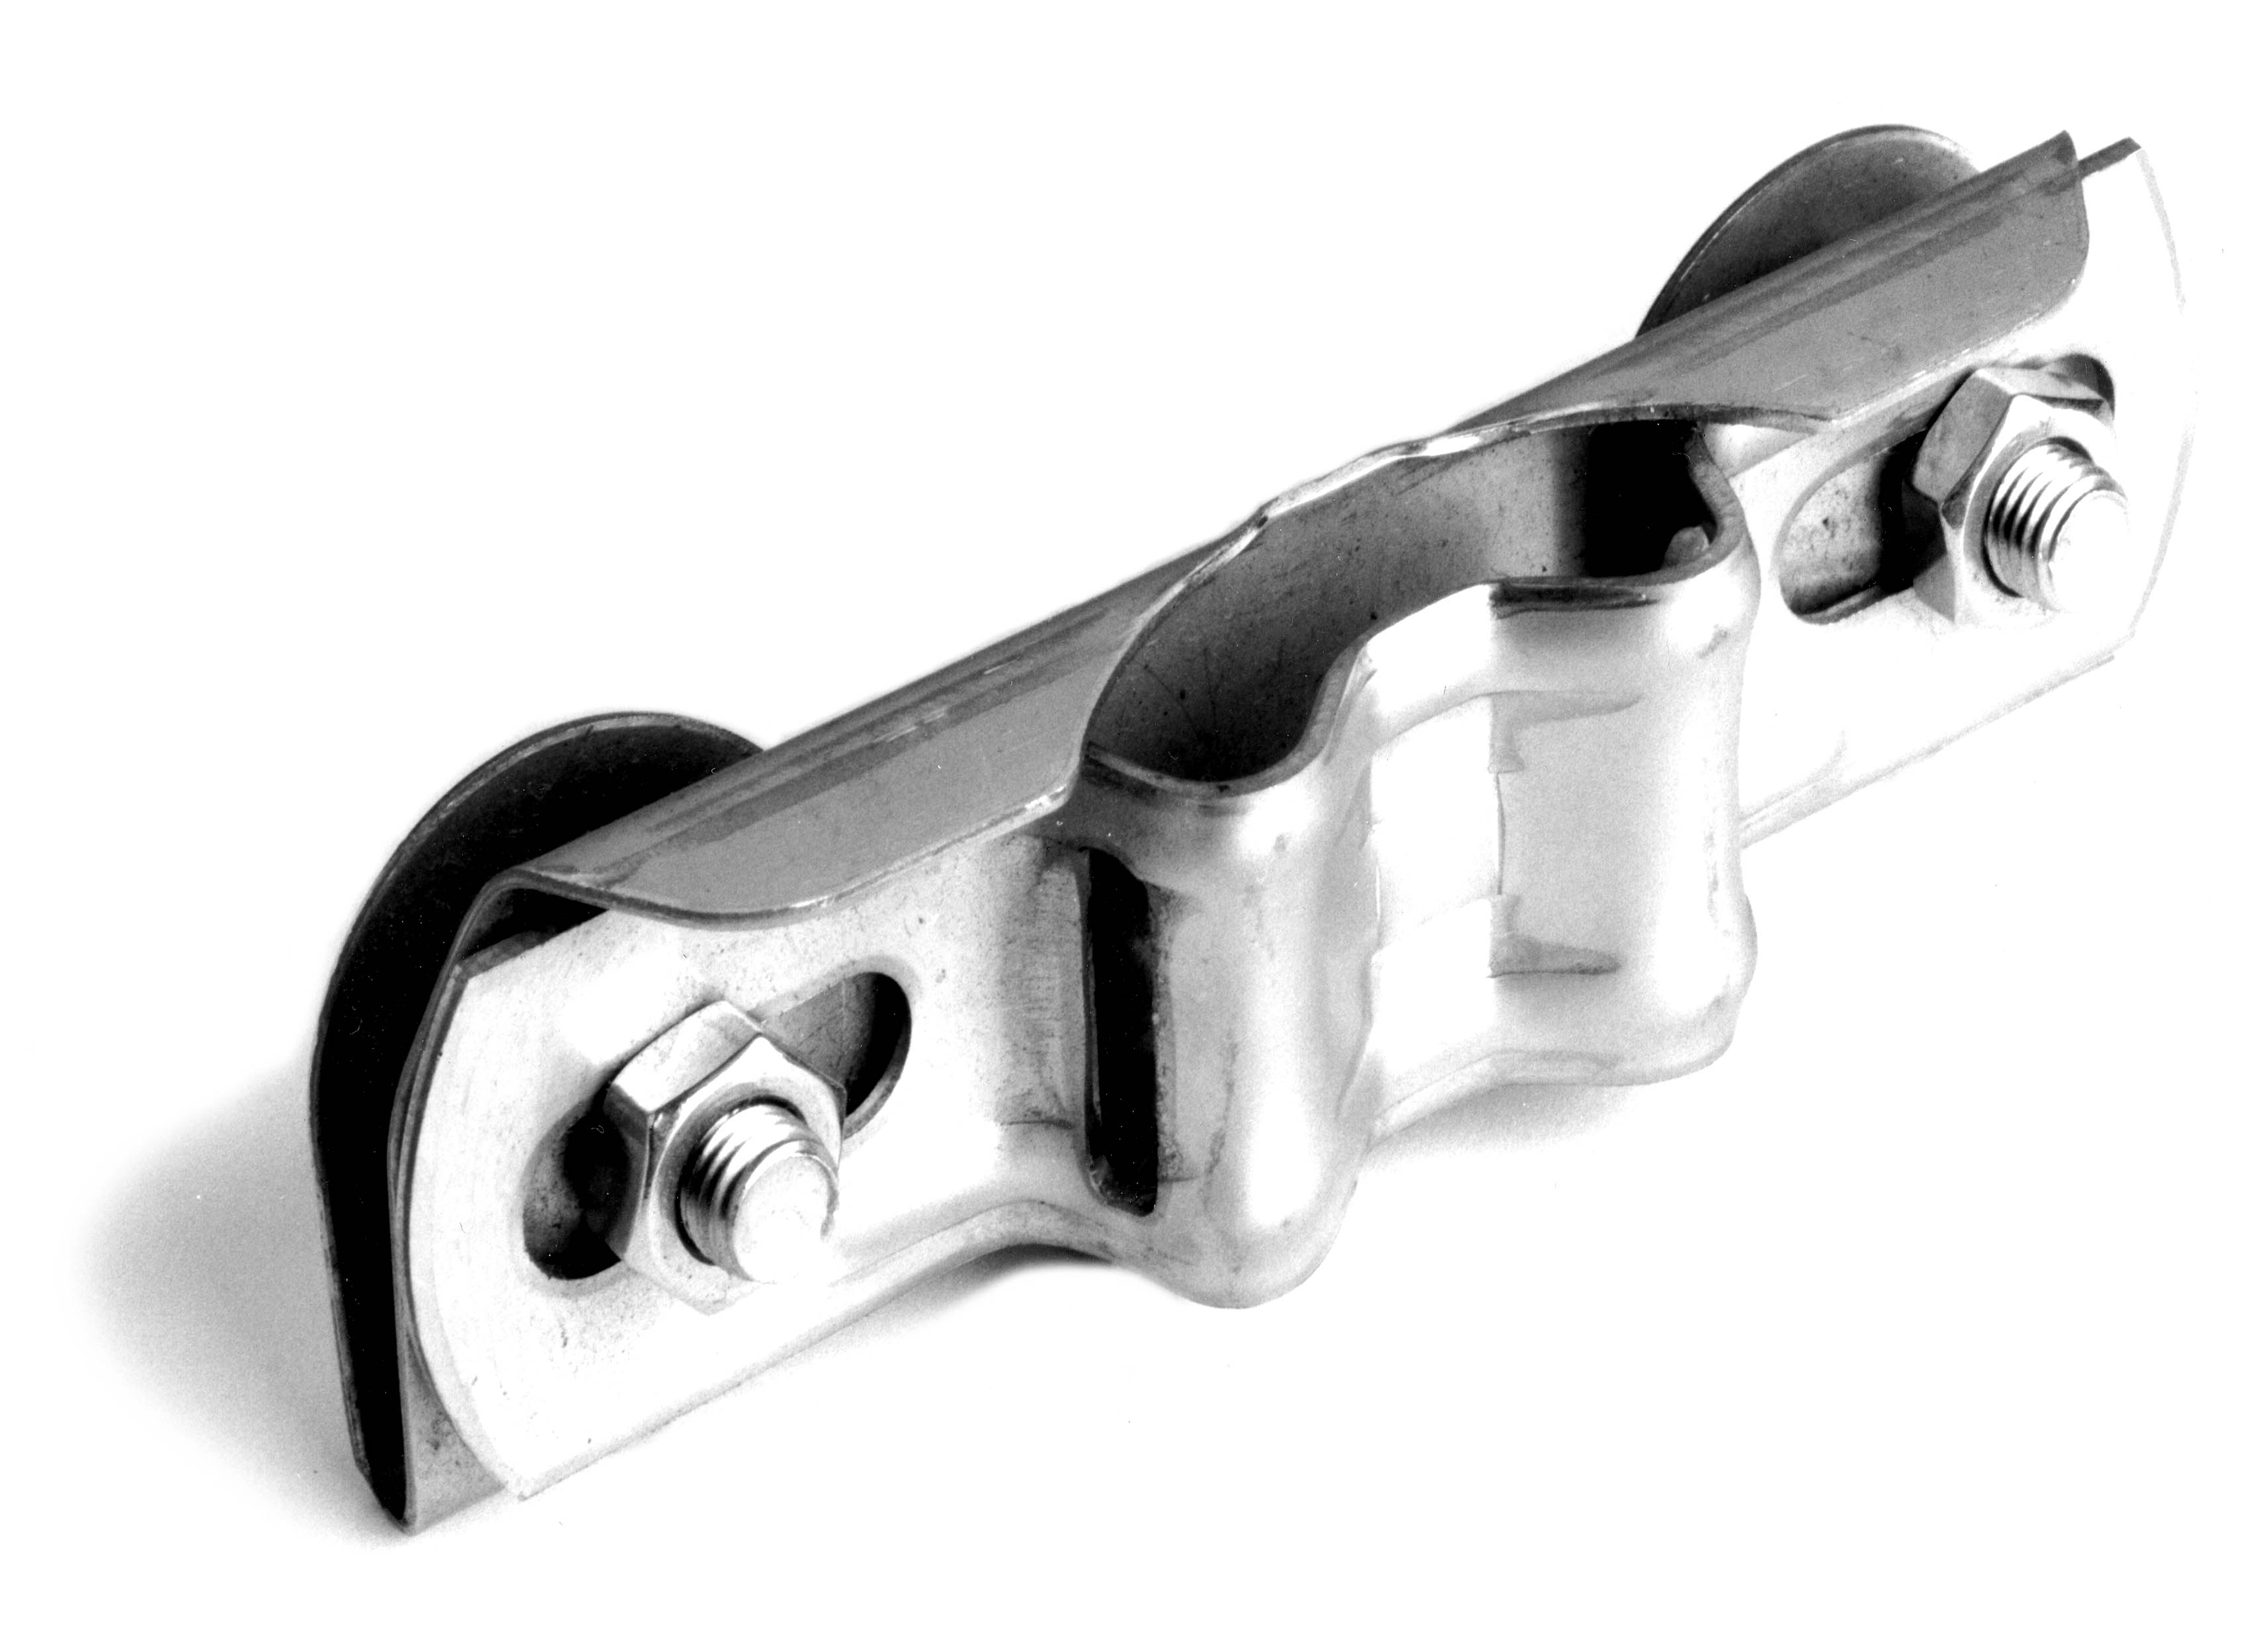 8mm Federklemme (Bandschelle), passend für ca. 8.5-10mm